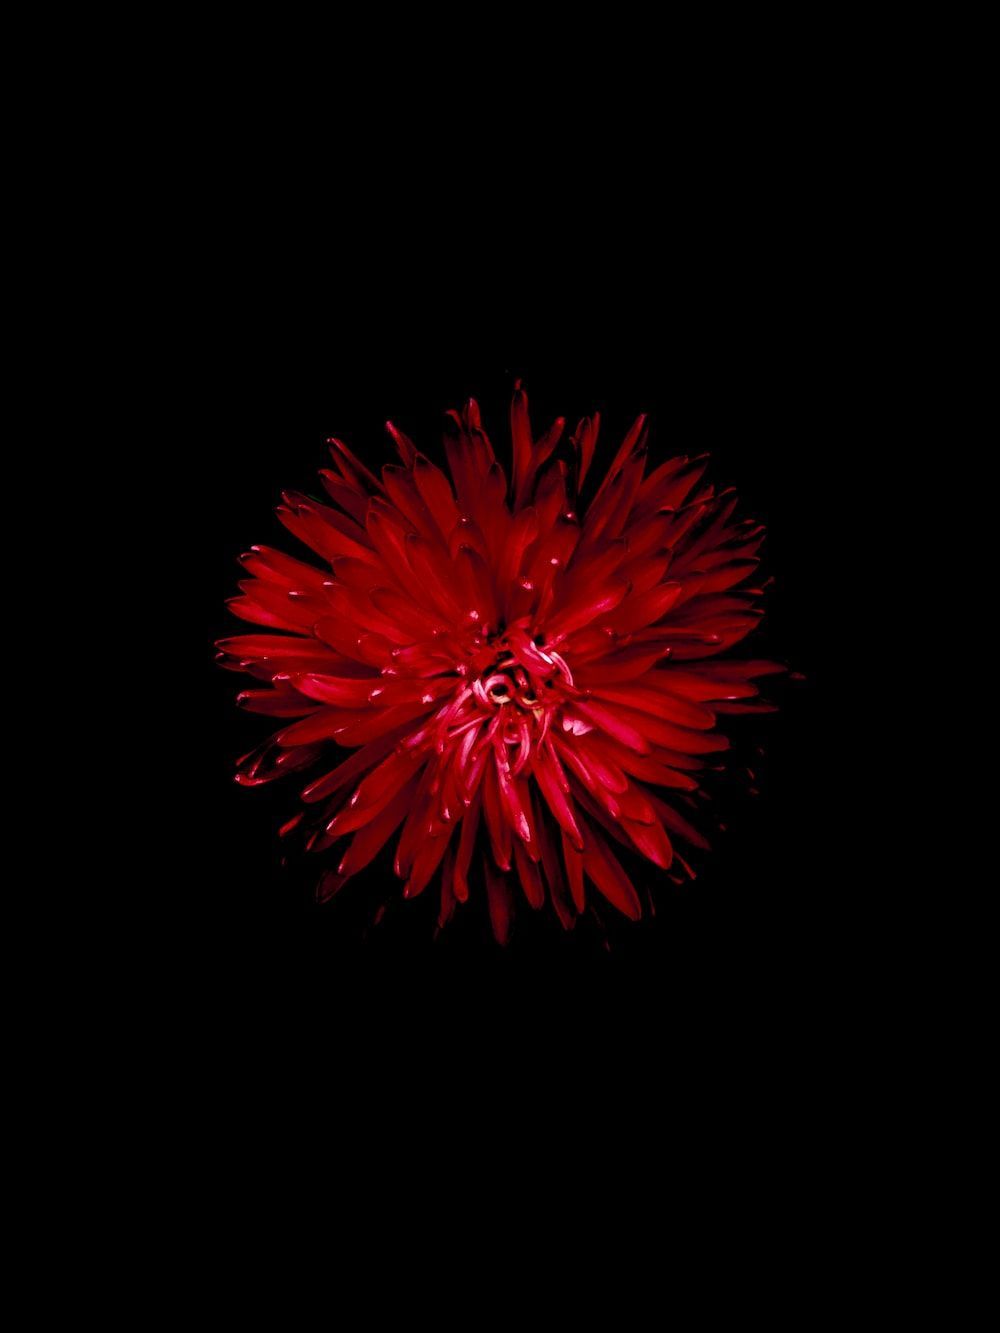 Rote Hintergrundbild 1000x1333. Foto zum Thema rote Blume auf schwarzem Hintergrund